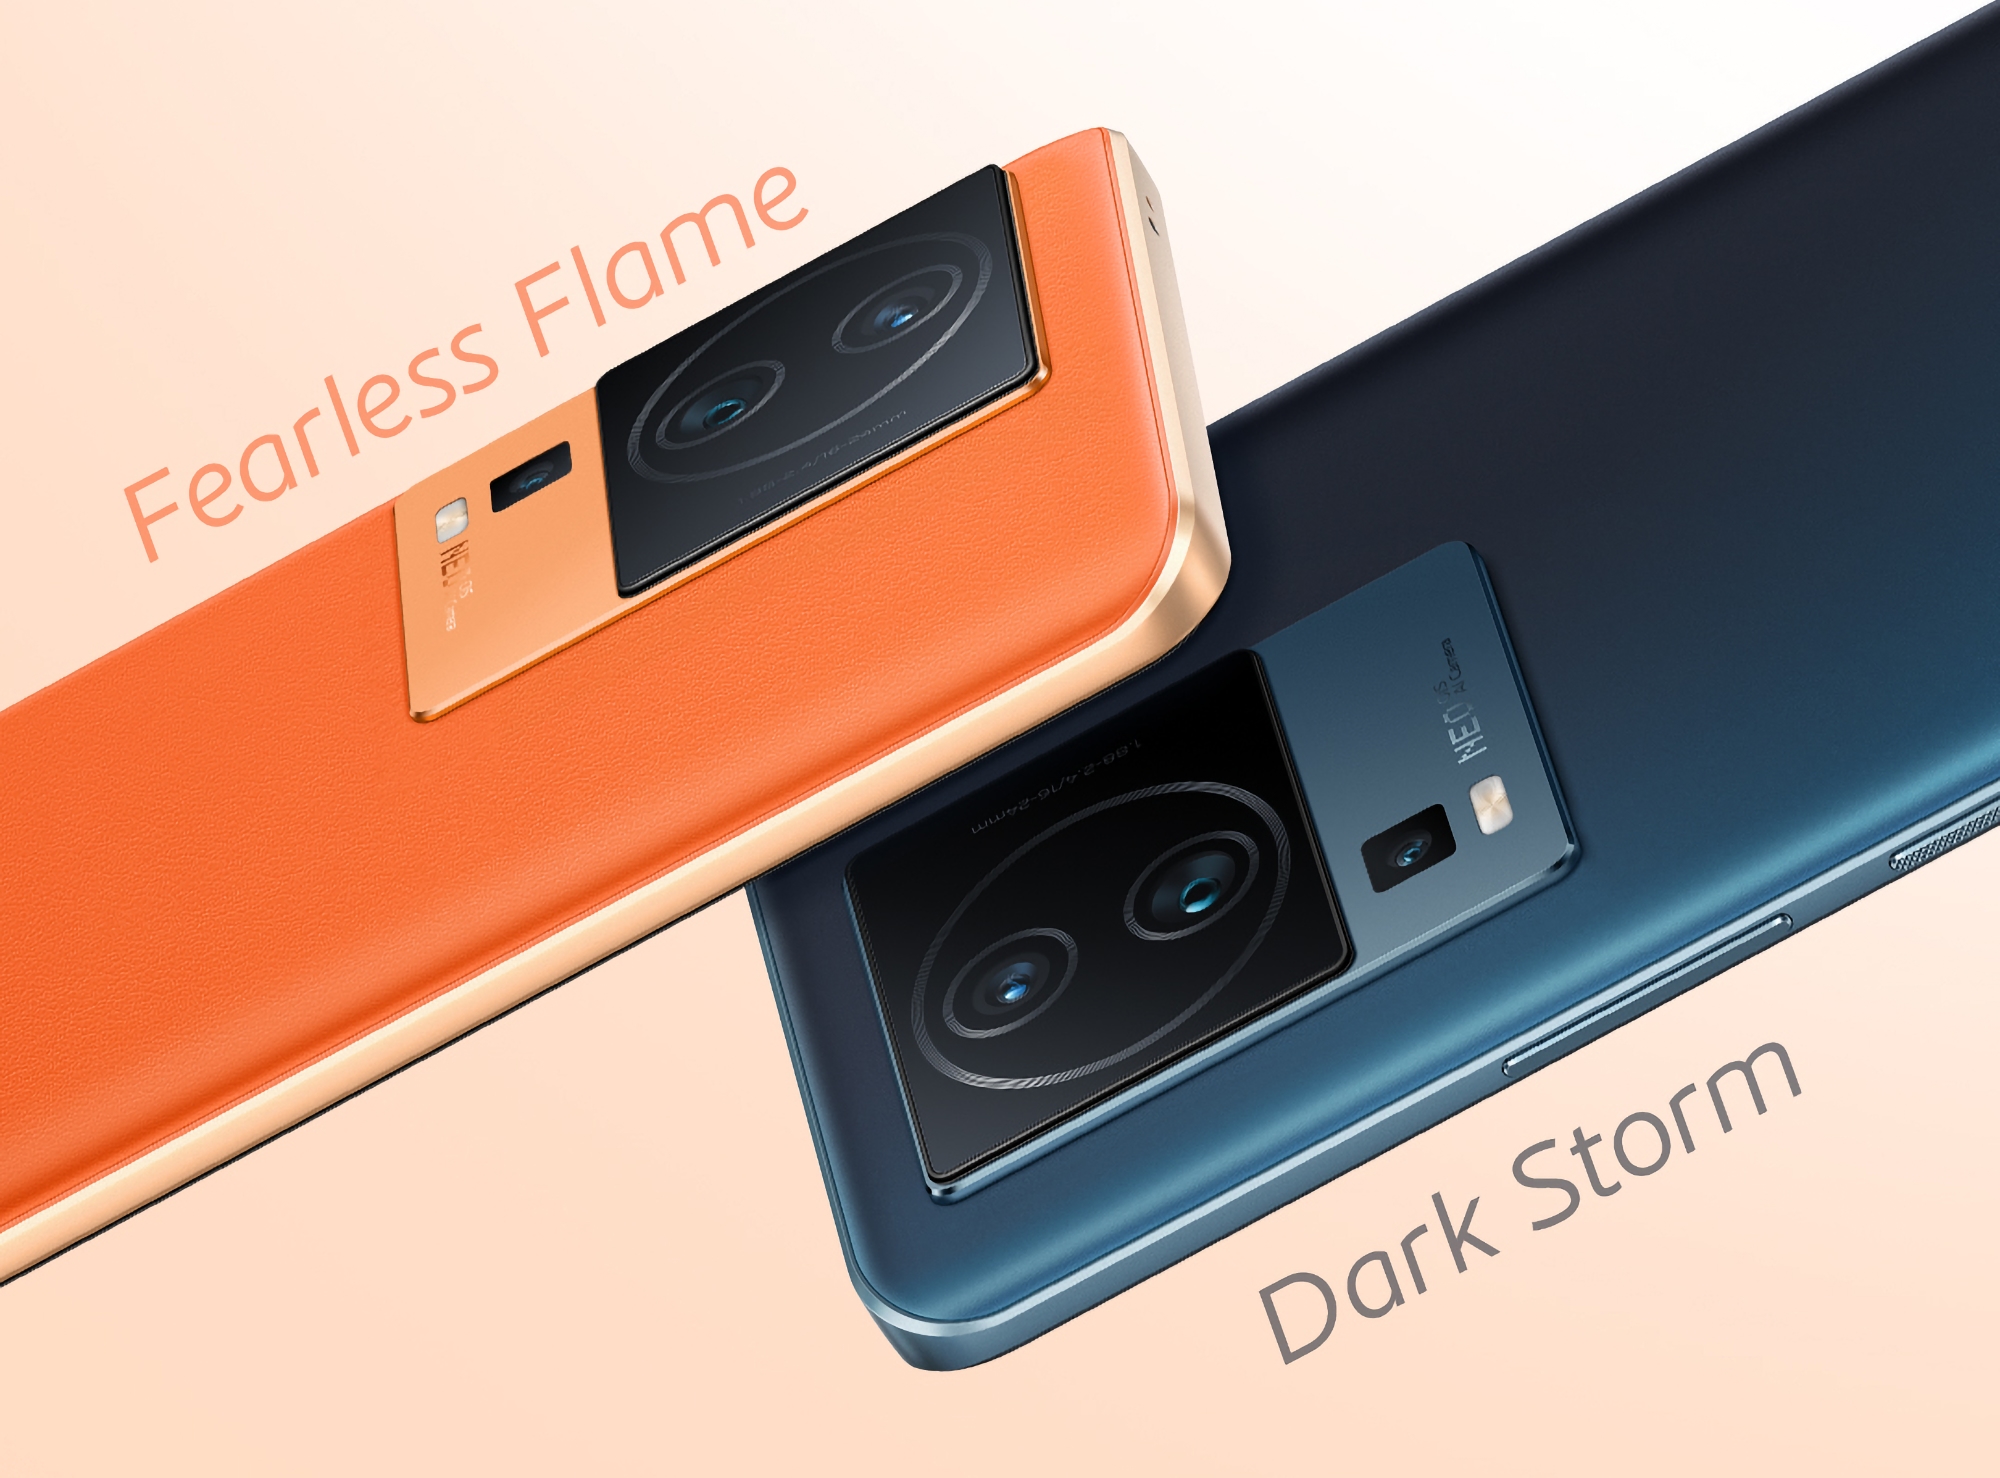 Två färger och en trippelkamera: vivo släpper en ny teaser på smarttelefonen iQOO Neo 7 Pro